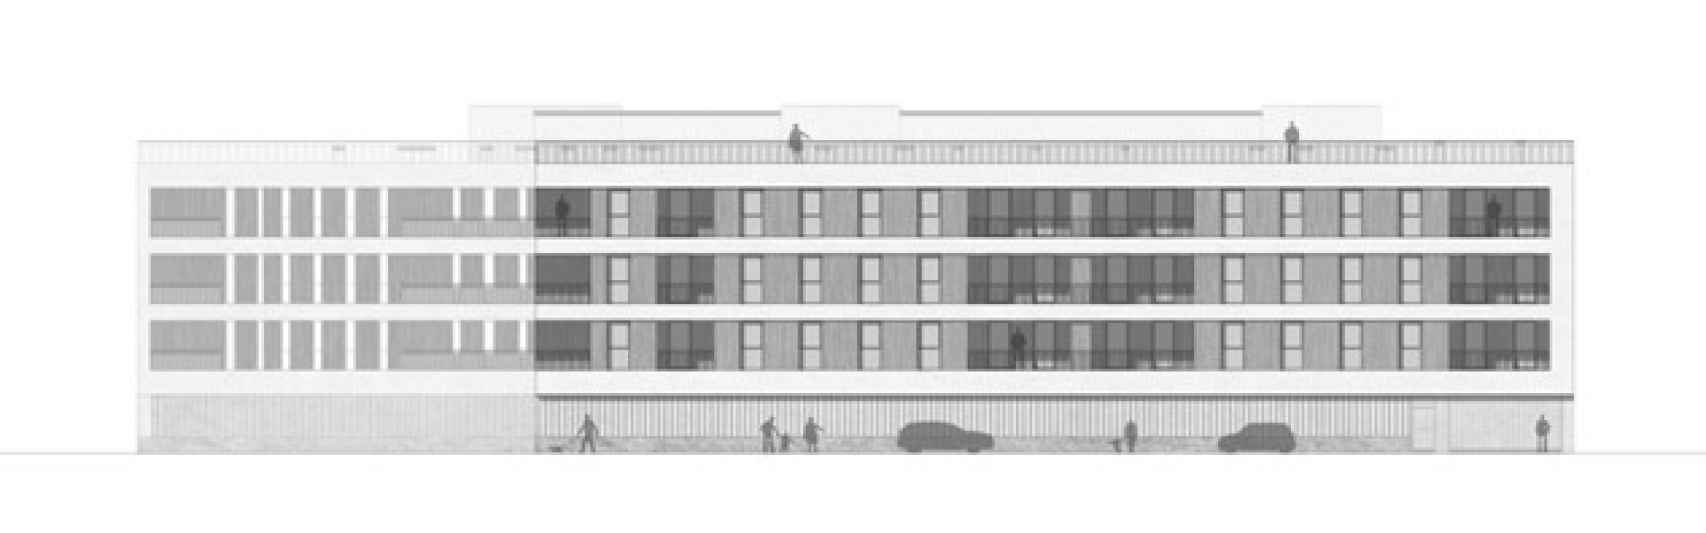 Plano de la fachada de la promoción de viviendas de Medina del Campo